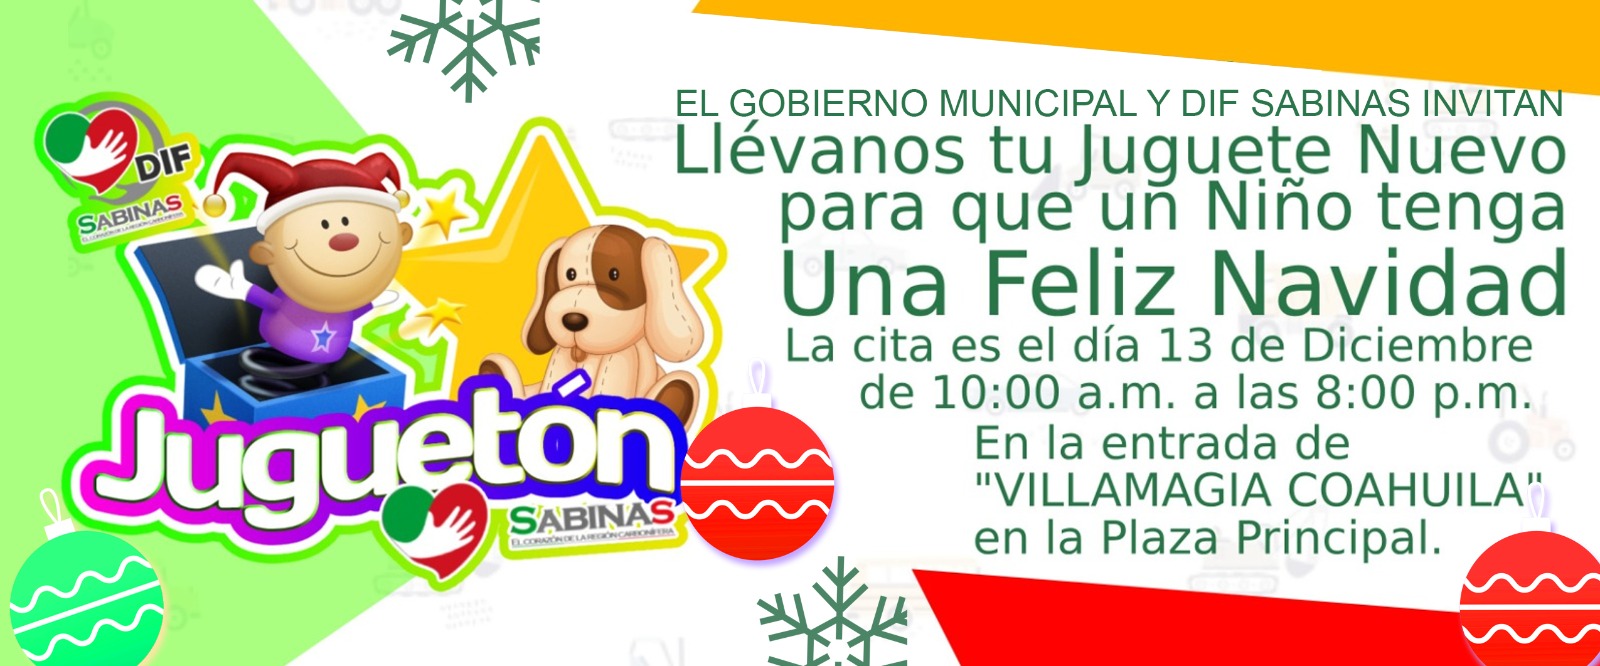 Participa en el Juguetón por una navidad llena de alegría en Sabinas